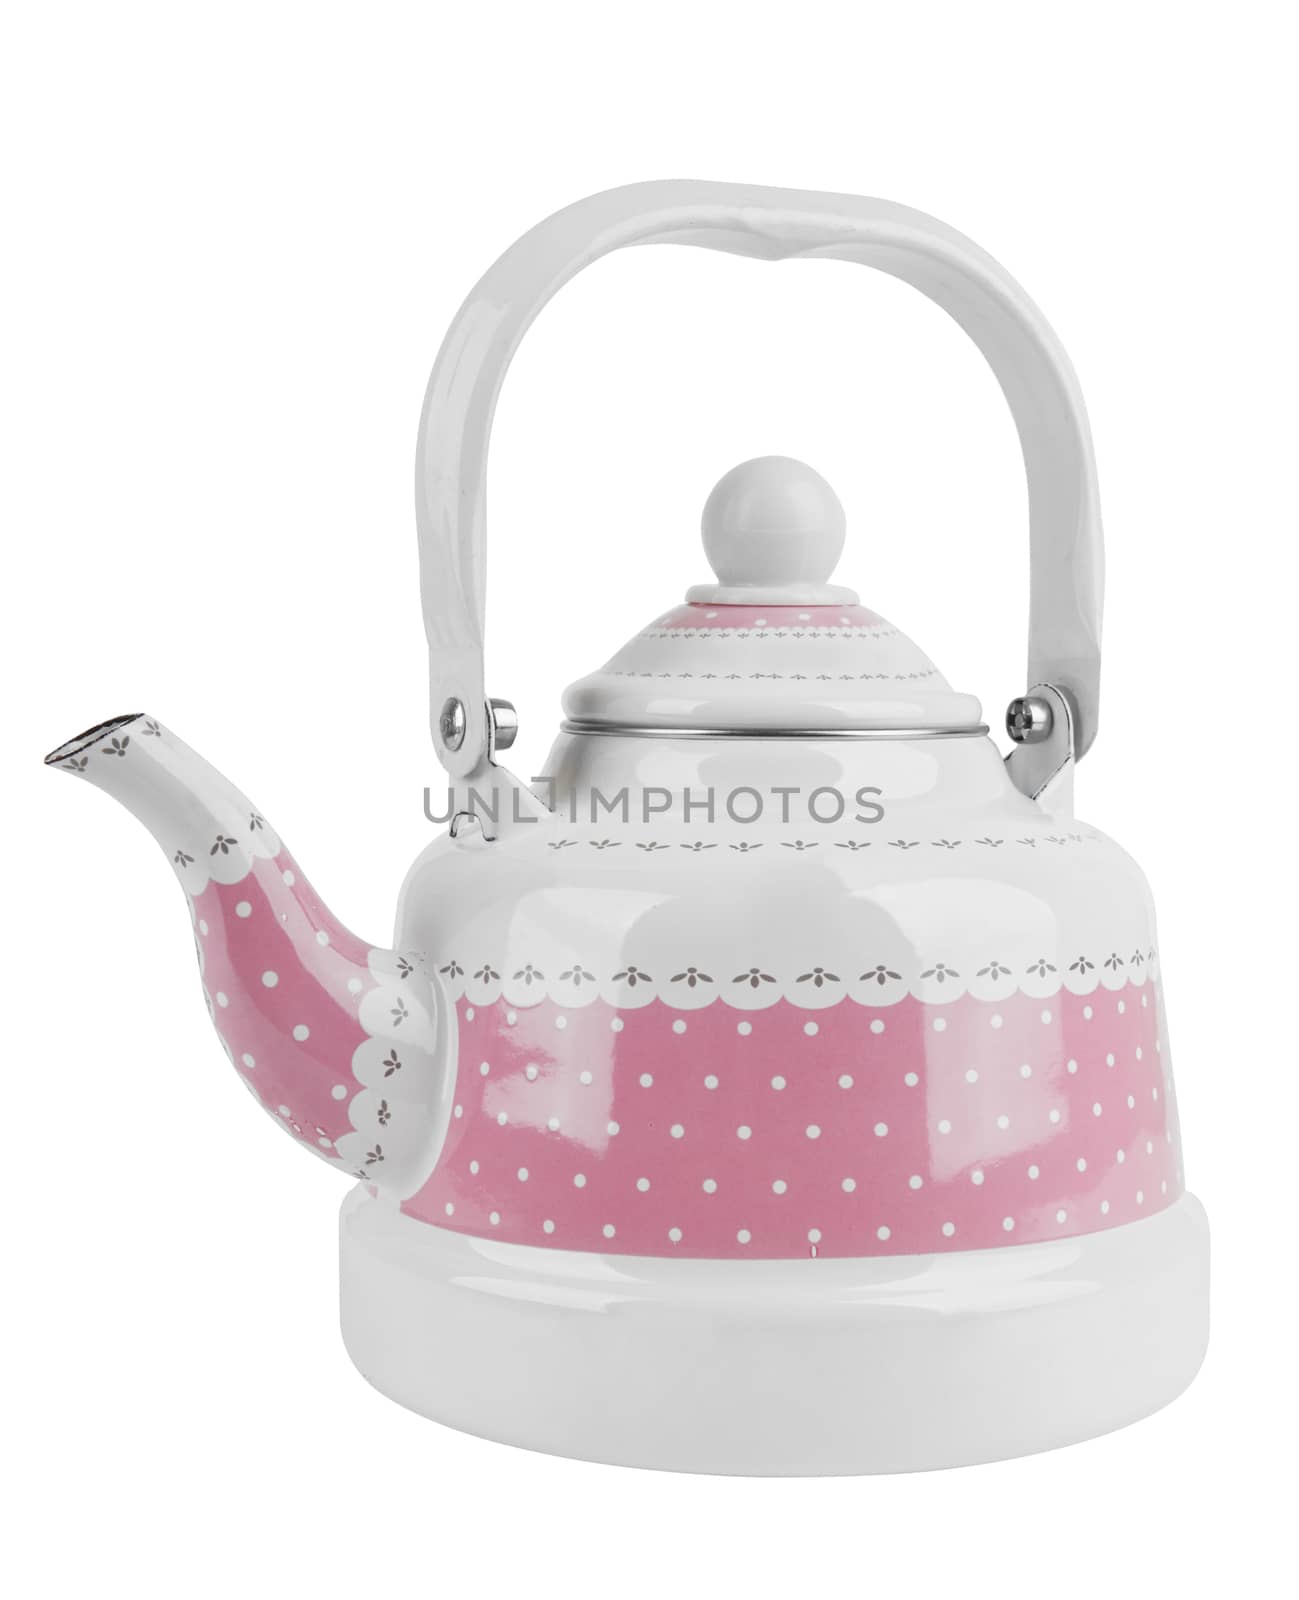 Pink metal kettle by pioneer111